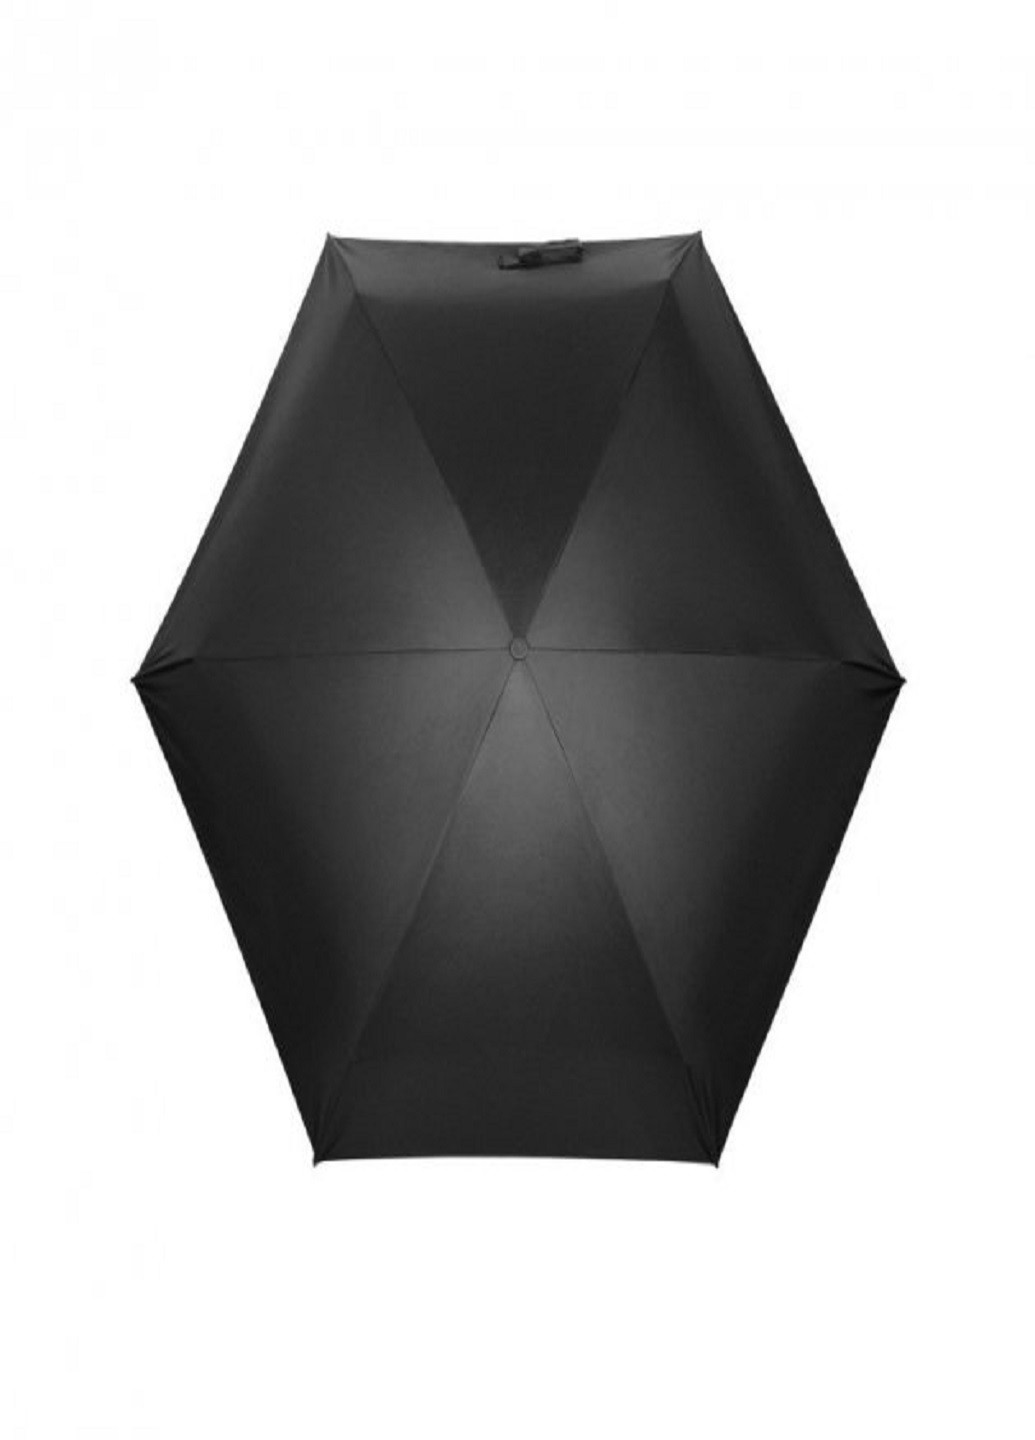 Універсальна міні парасолька в капсулі Black кишенькова парасолька у футлярі VTech (253499267)